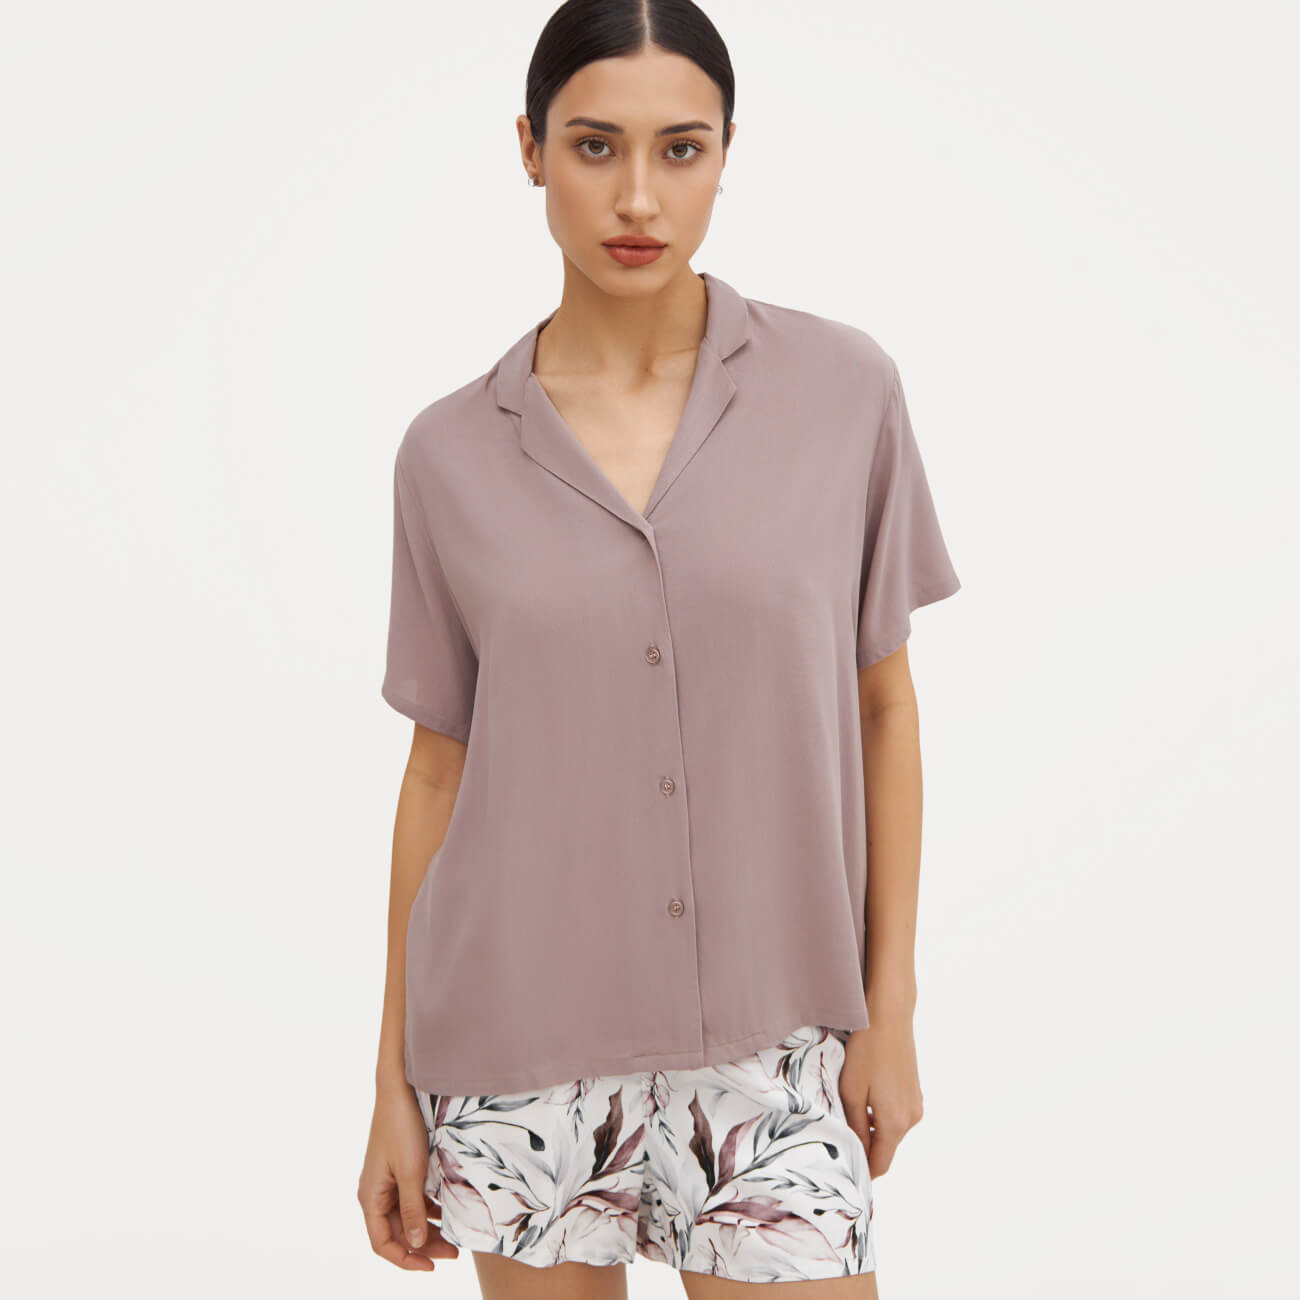 Рубашка женская, домашняя р. XL, с коротким рукавом, вискоза, пыльно-розовая, Rosana